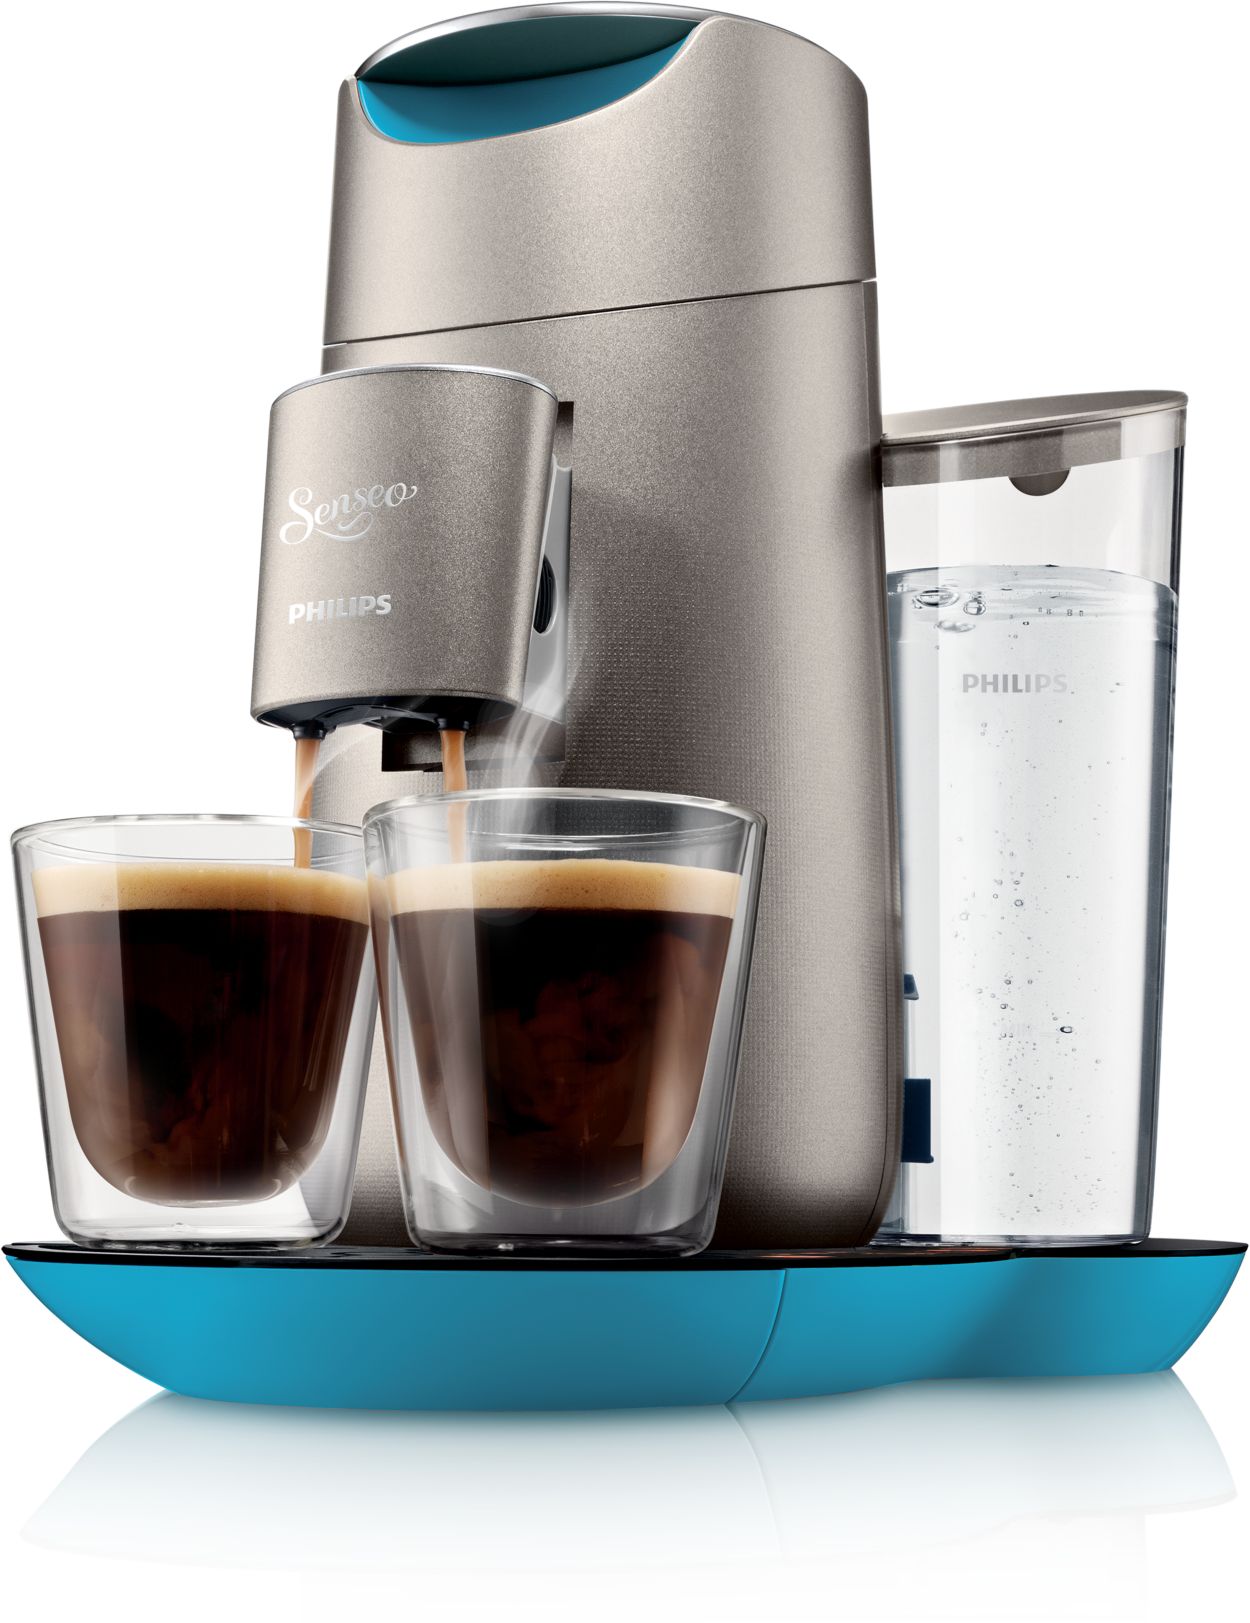 Cafetière SENSEO PHILIPS Machine à café dosette + café filtre